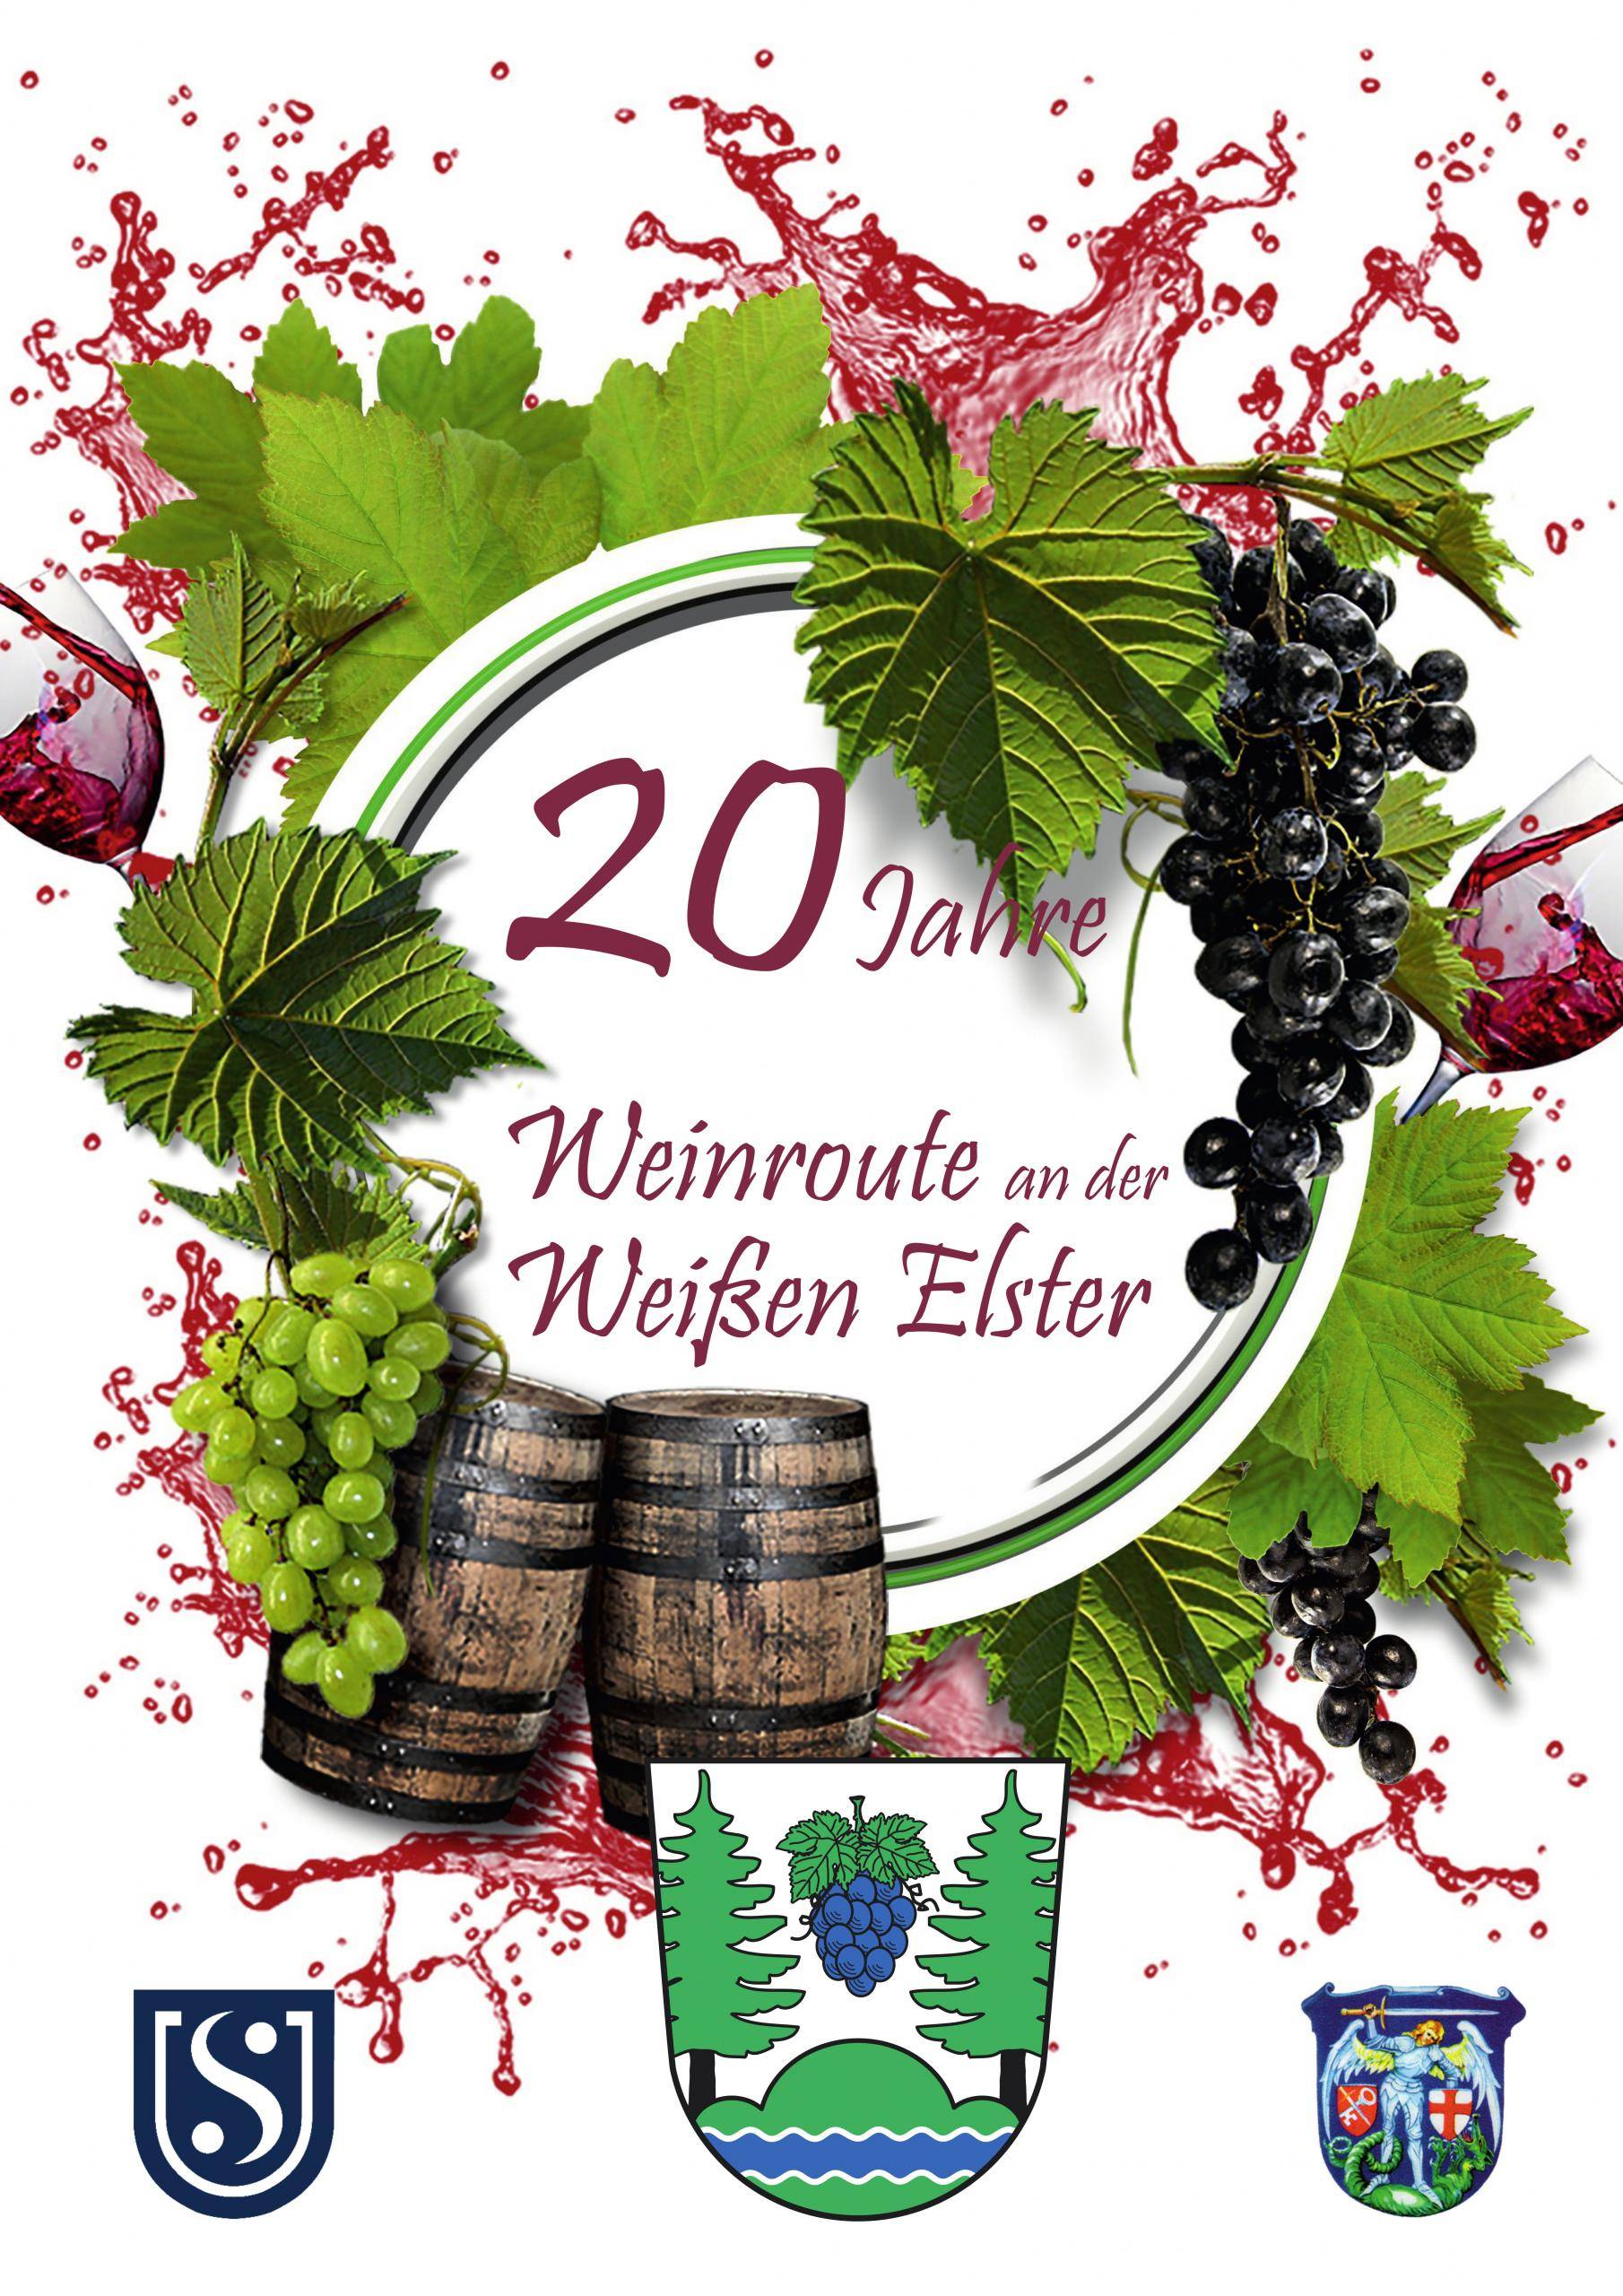 20 Jahre Weinroute an der Weißen Elster @Wila Werbung - Etiketten - Druck - Bärbel Wittenbecher.jpg